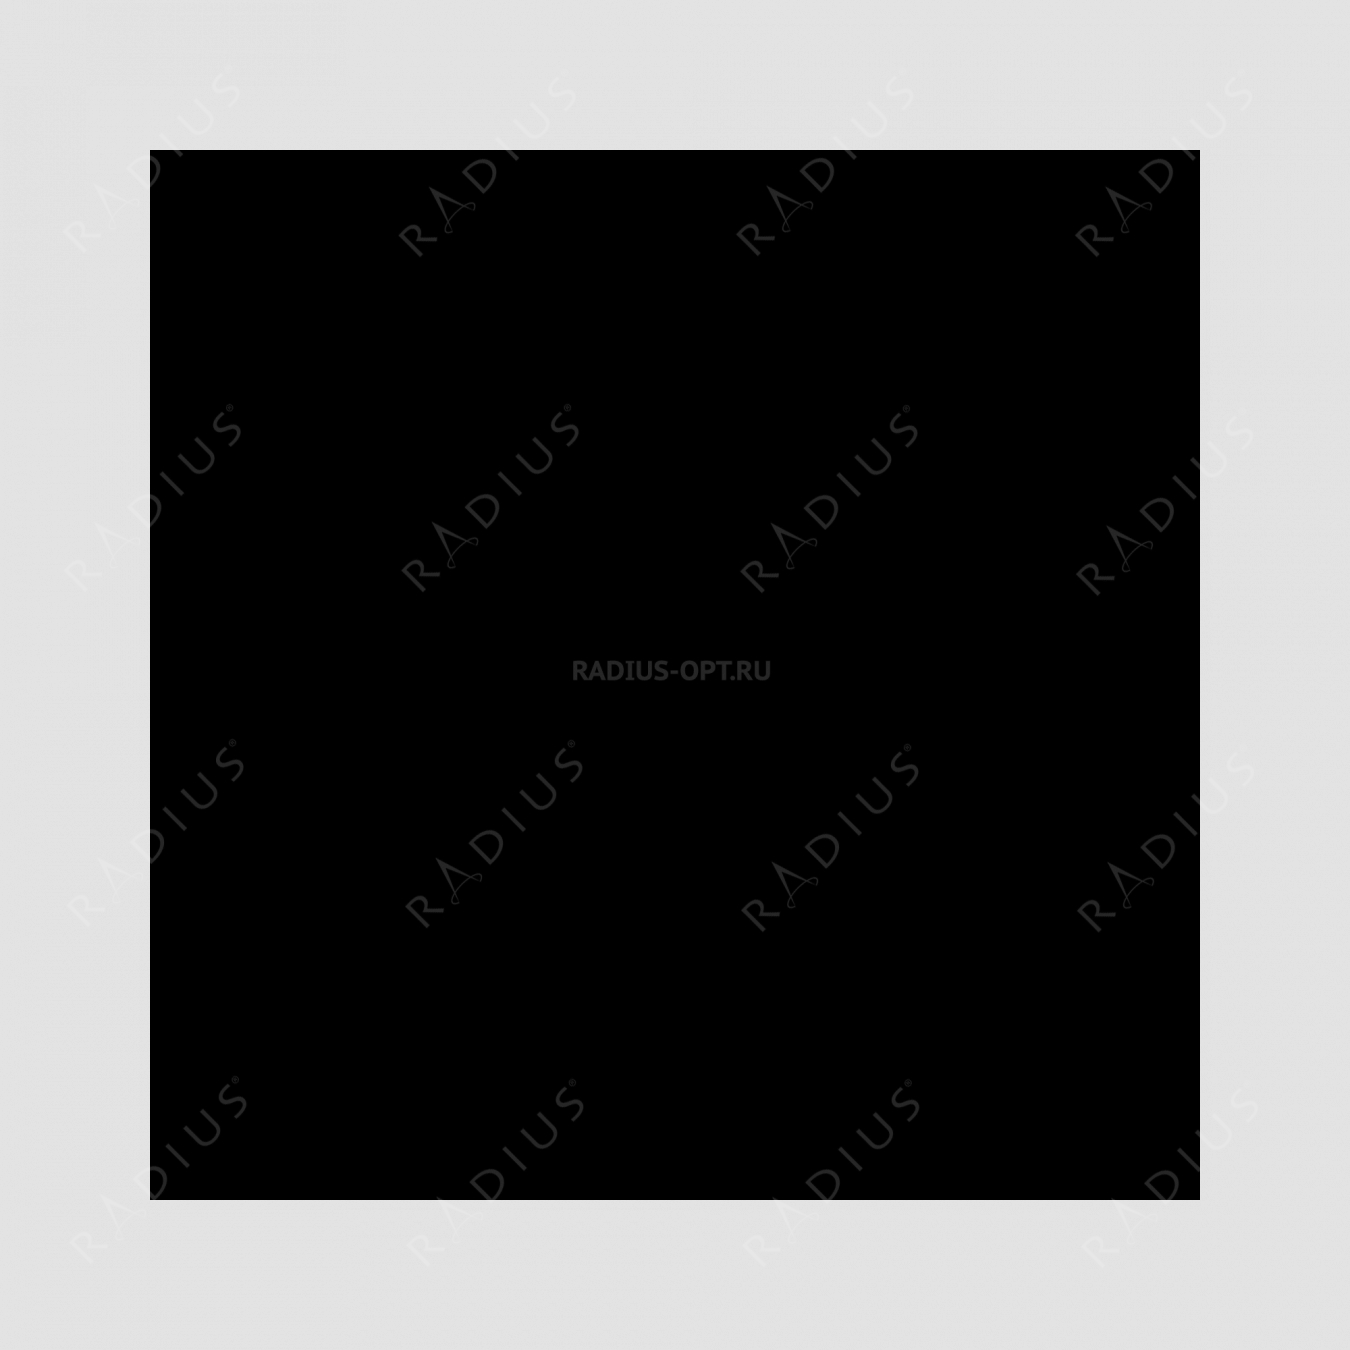 Кастрюля с крышкой, овальная, диаметр 27 см, объем 4,0 л, чугун с эмалированным покрытием, цвет рубин, серия Rubis, INVICTA, Франция